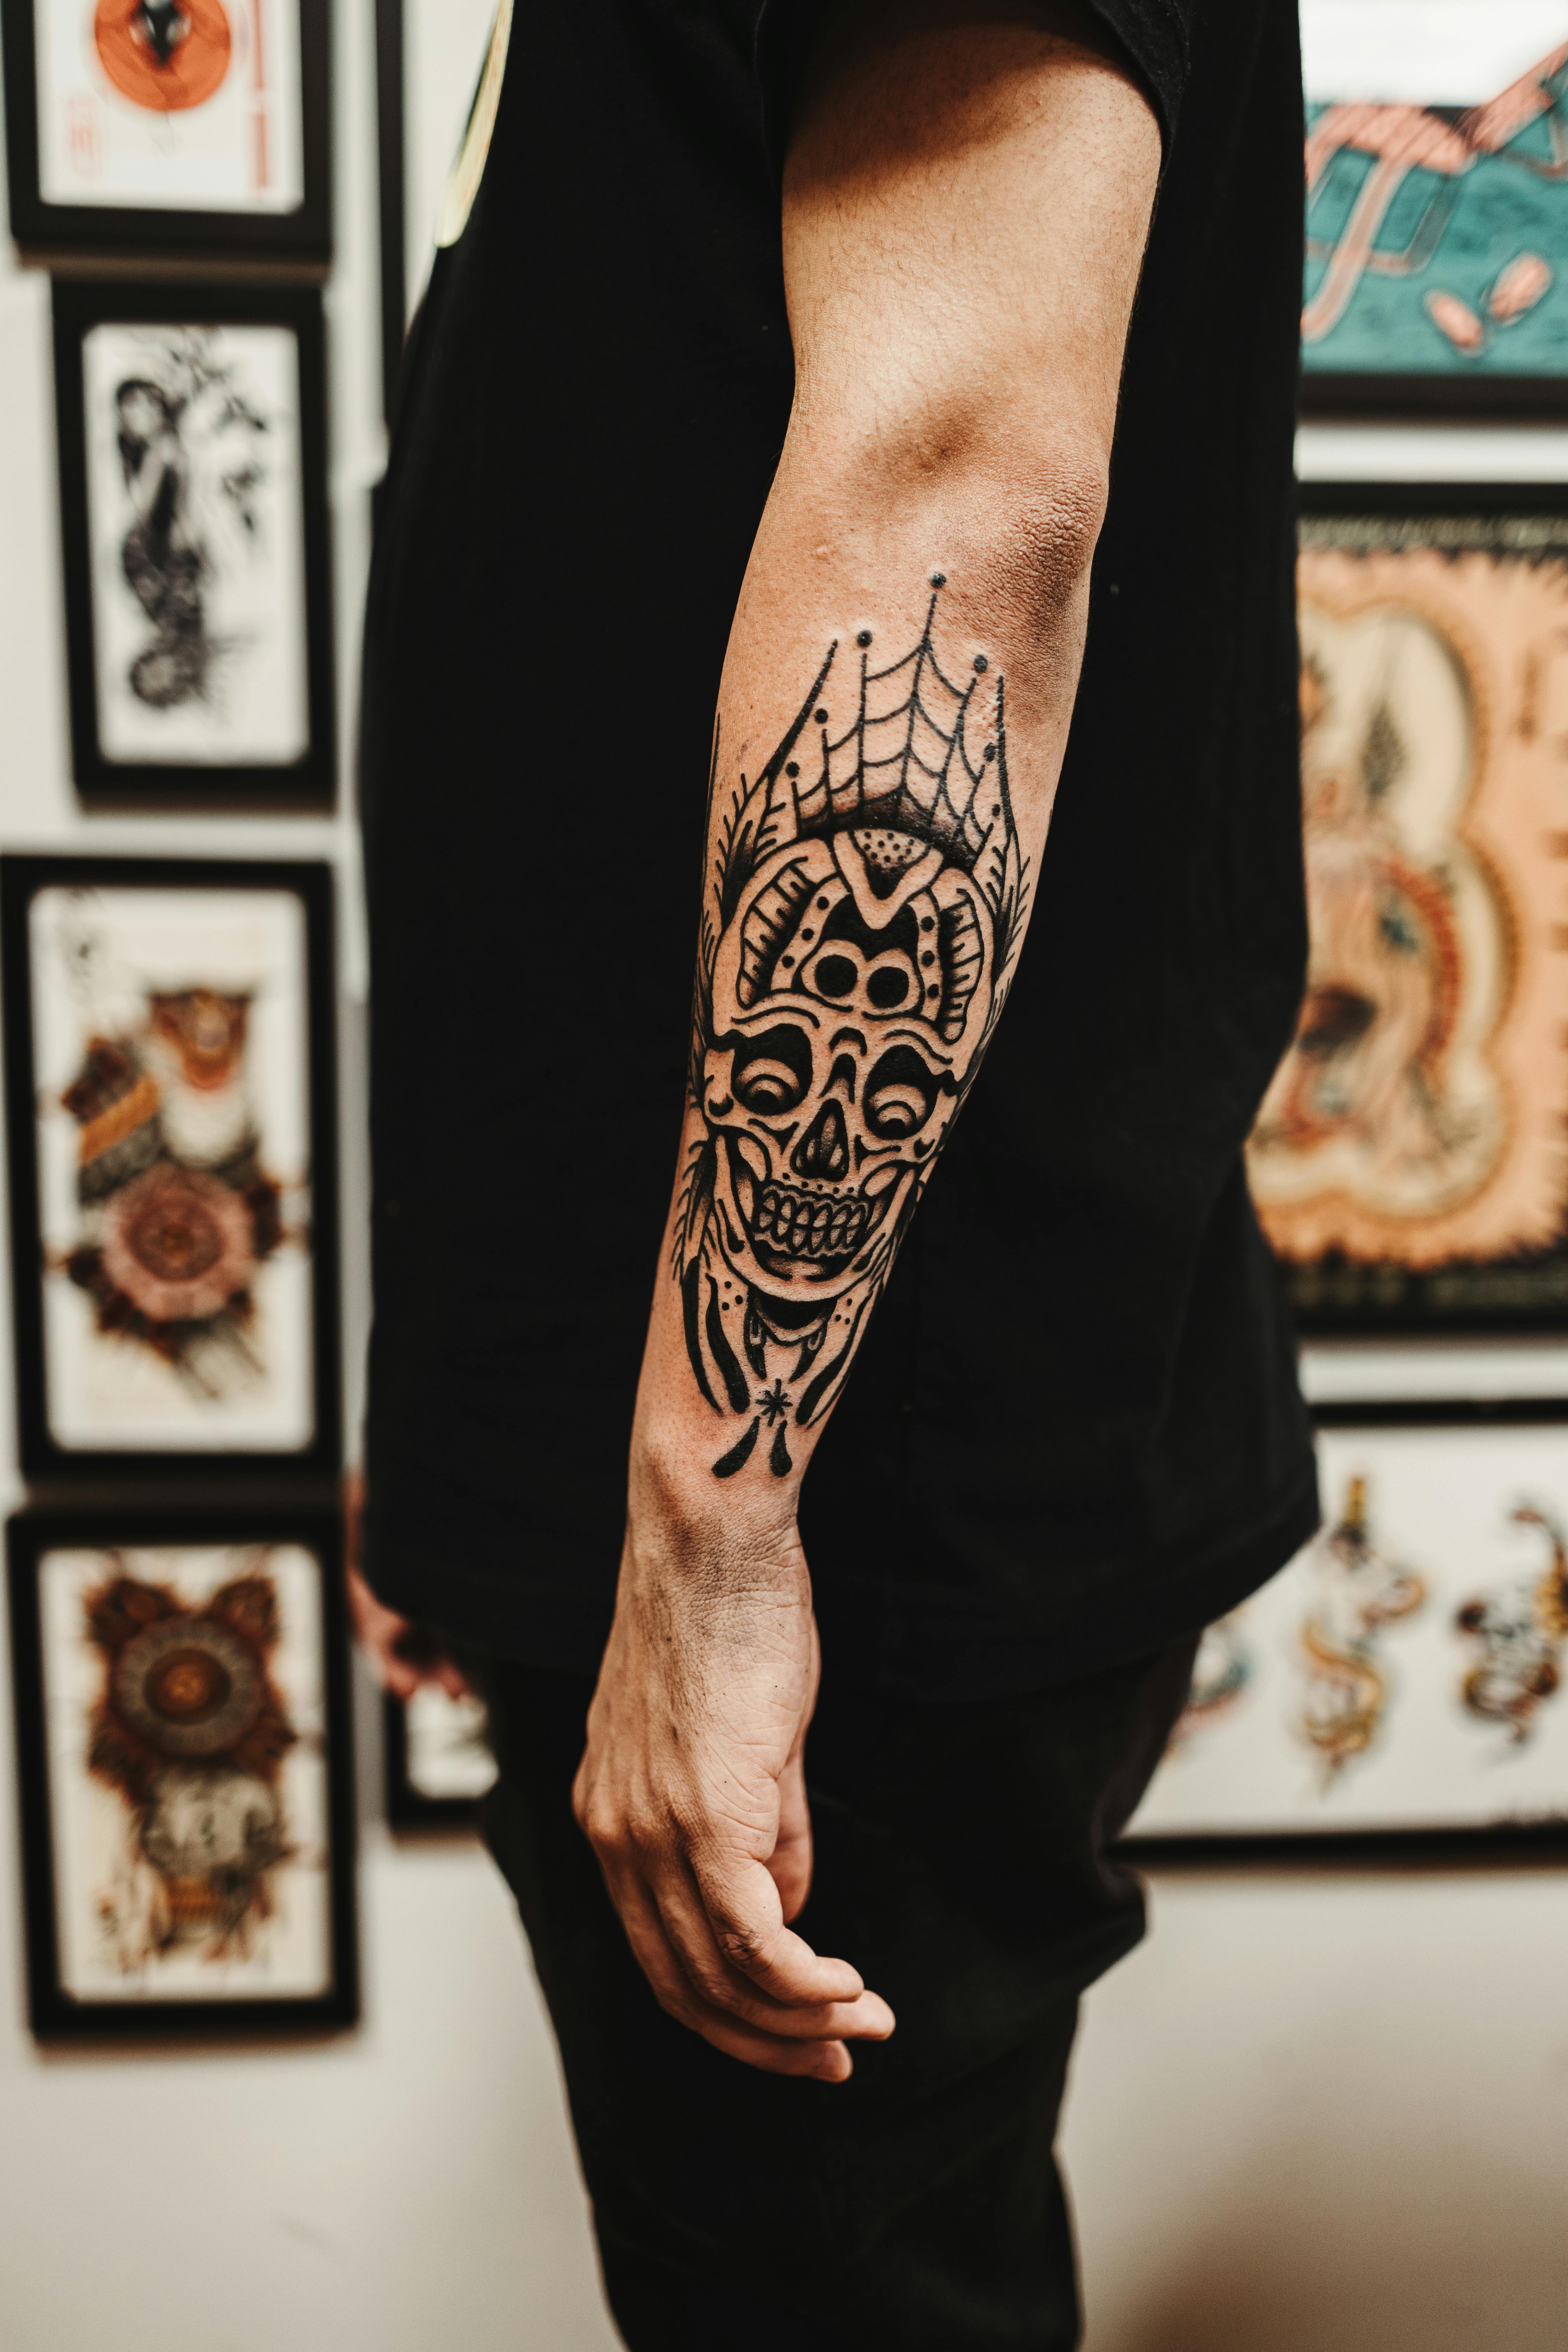 Tattoo Artist Alan Lott of Sacred Mandala Studio